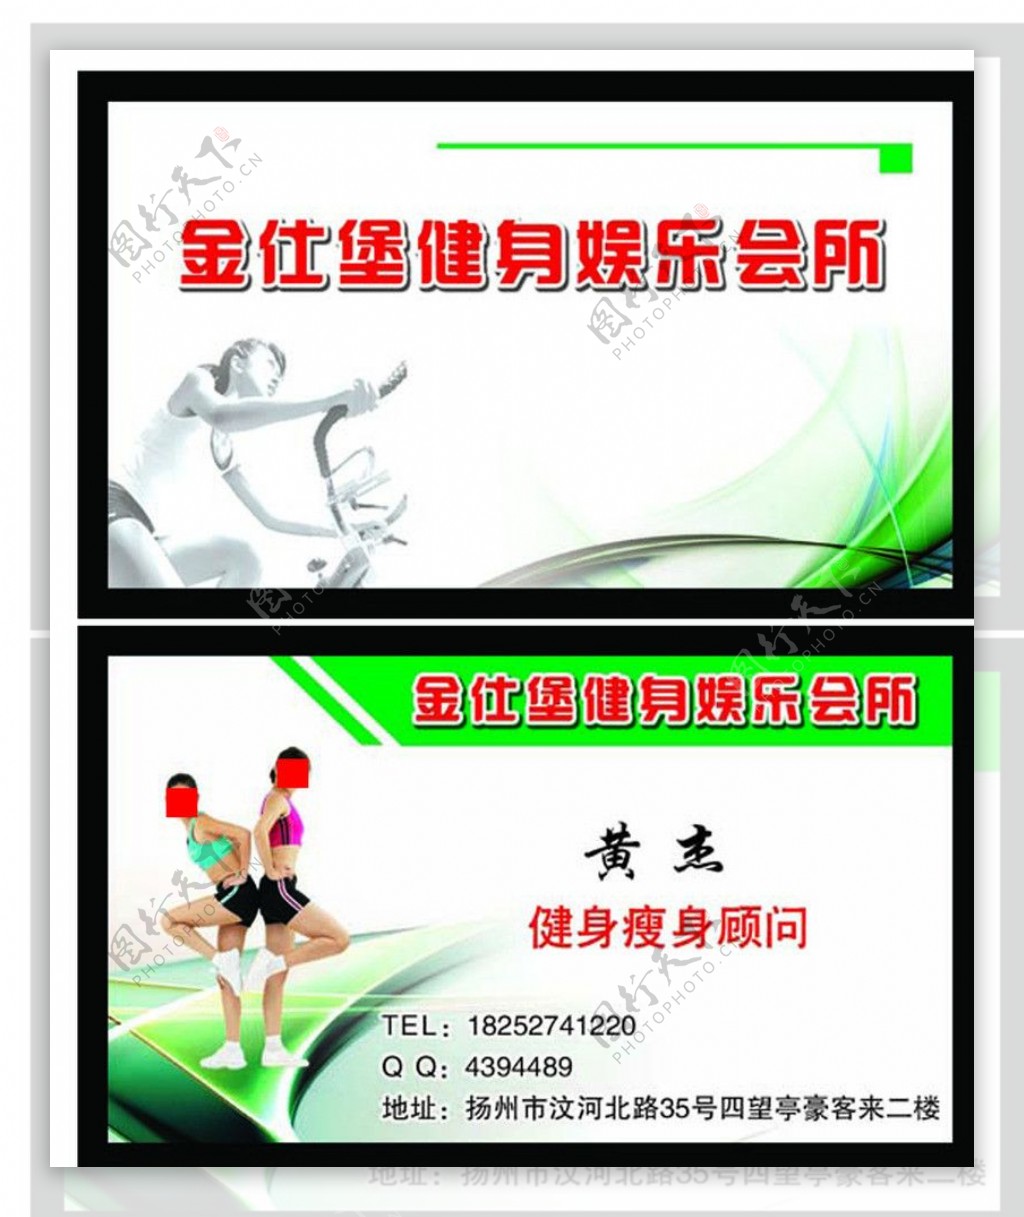 扬州优视企划健身名片图片